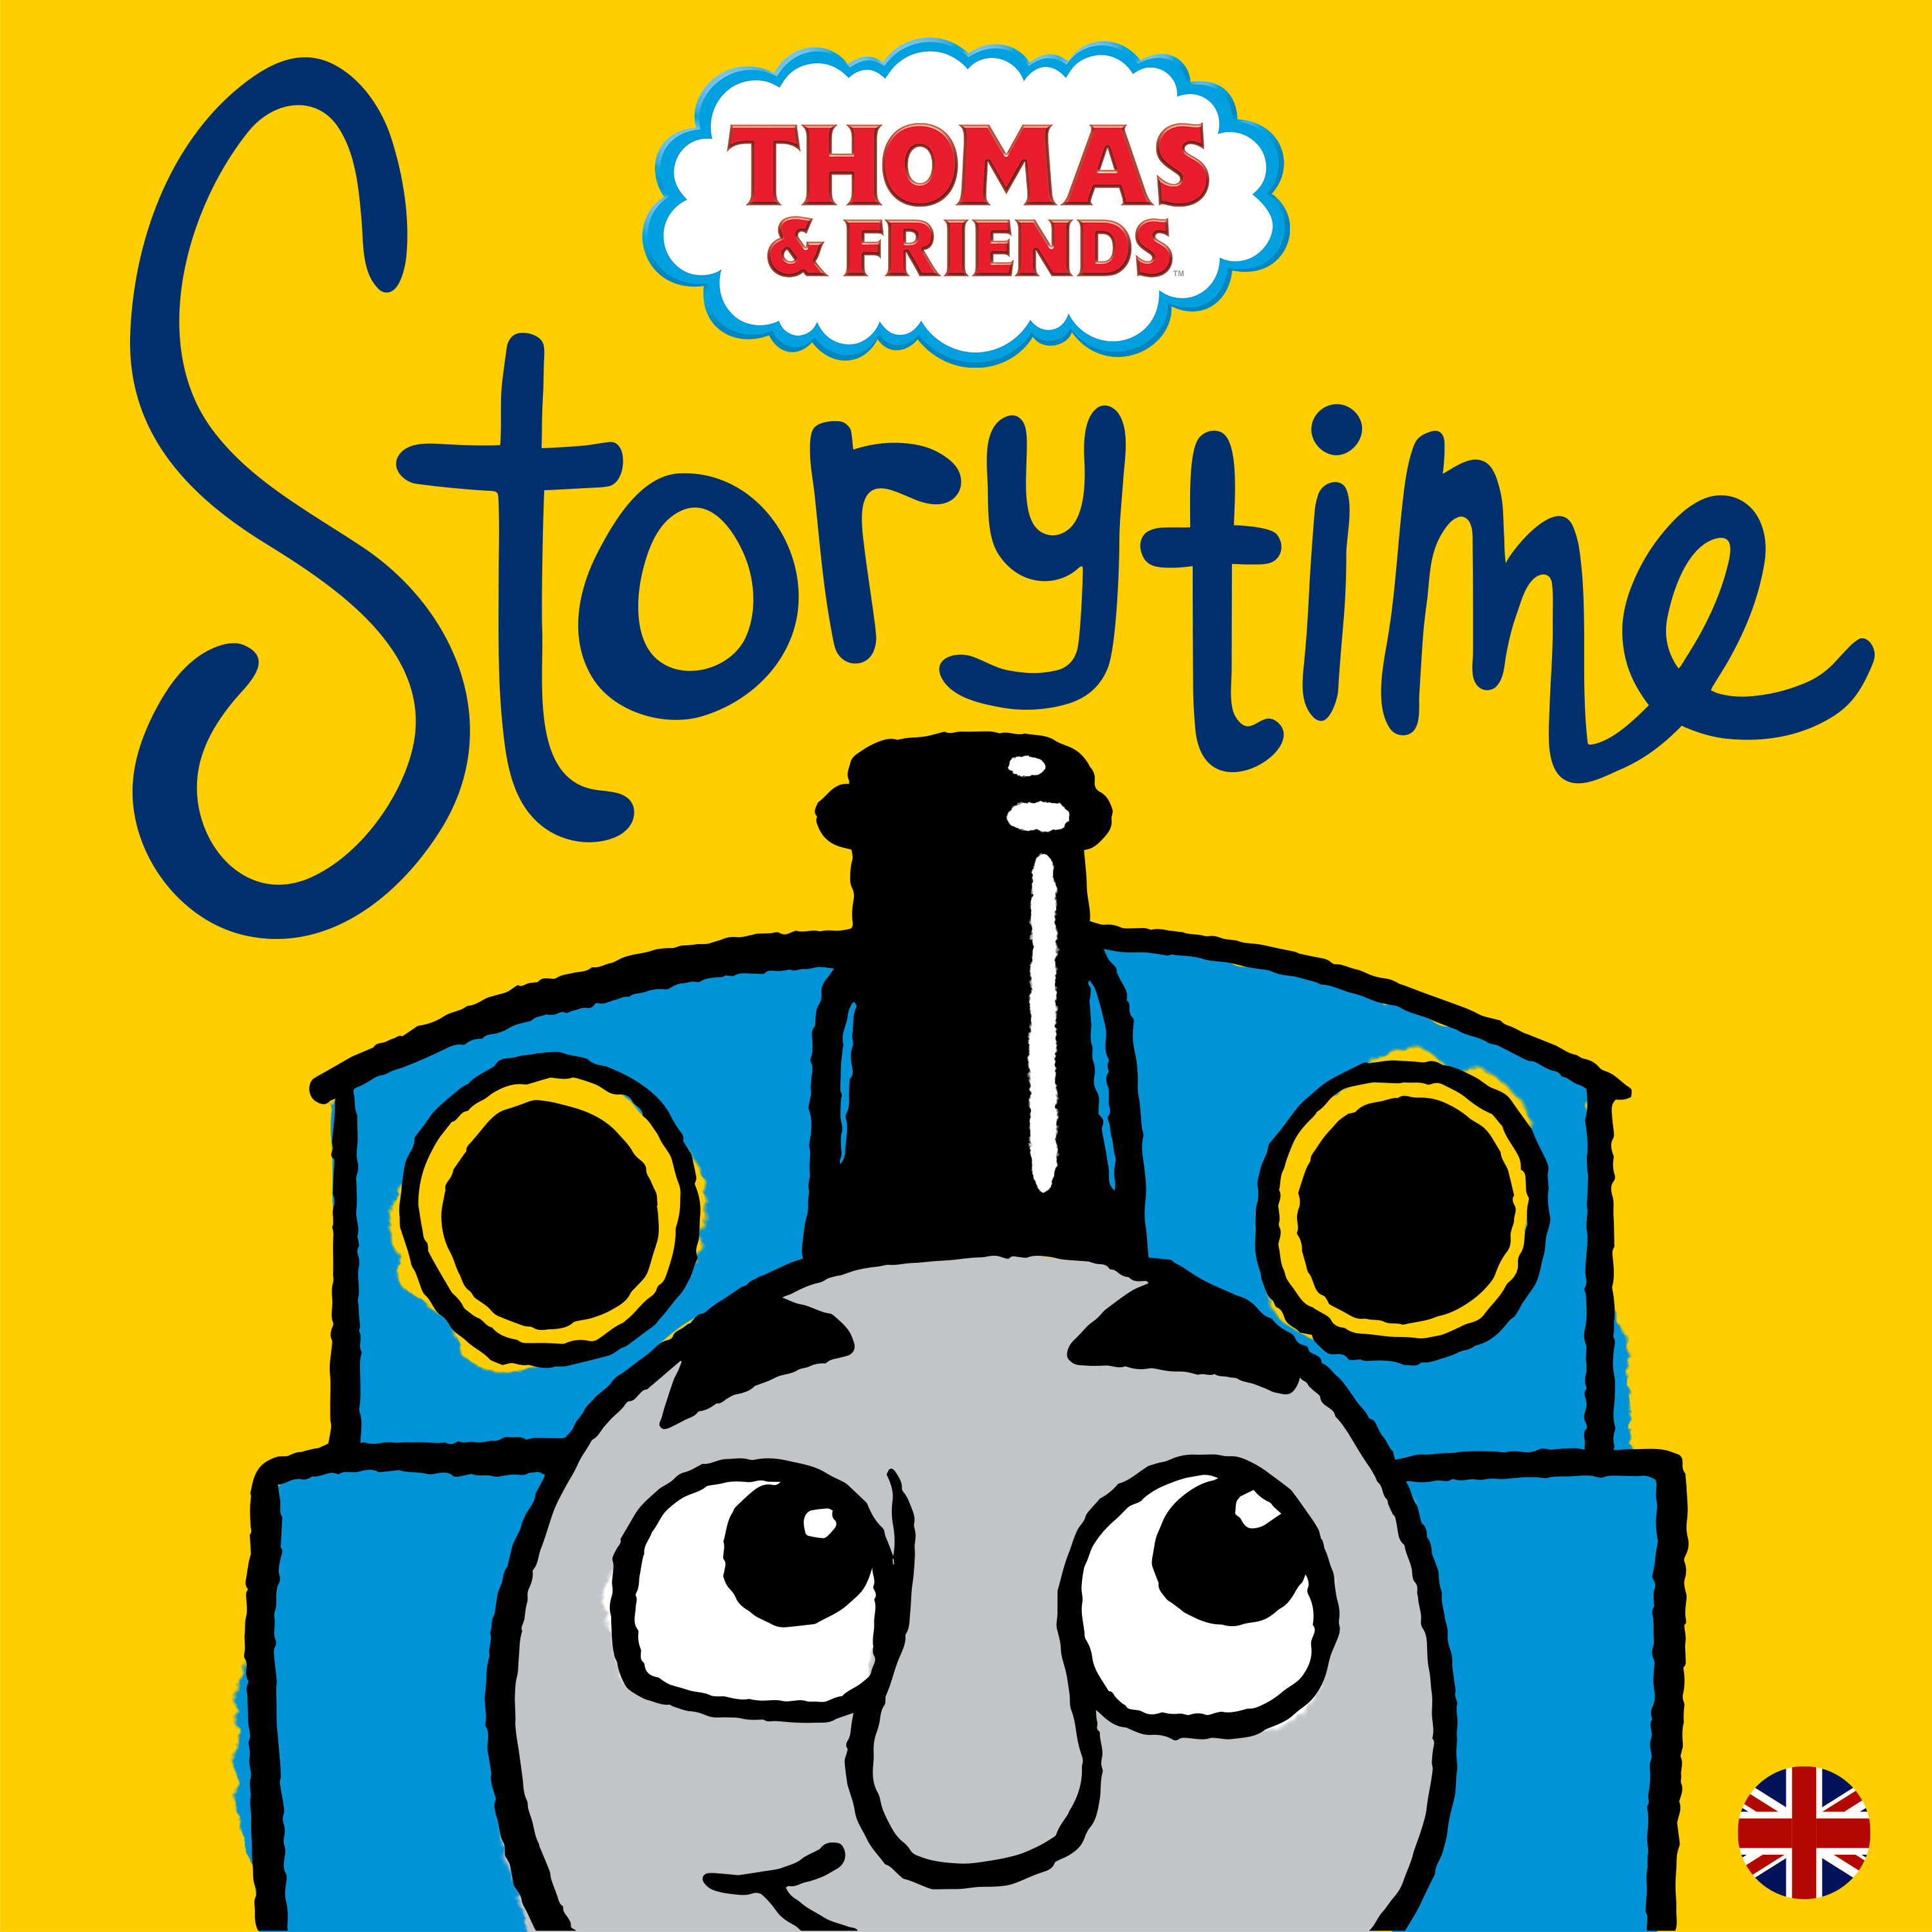 Thomas & Friends Storytime (UK)